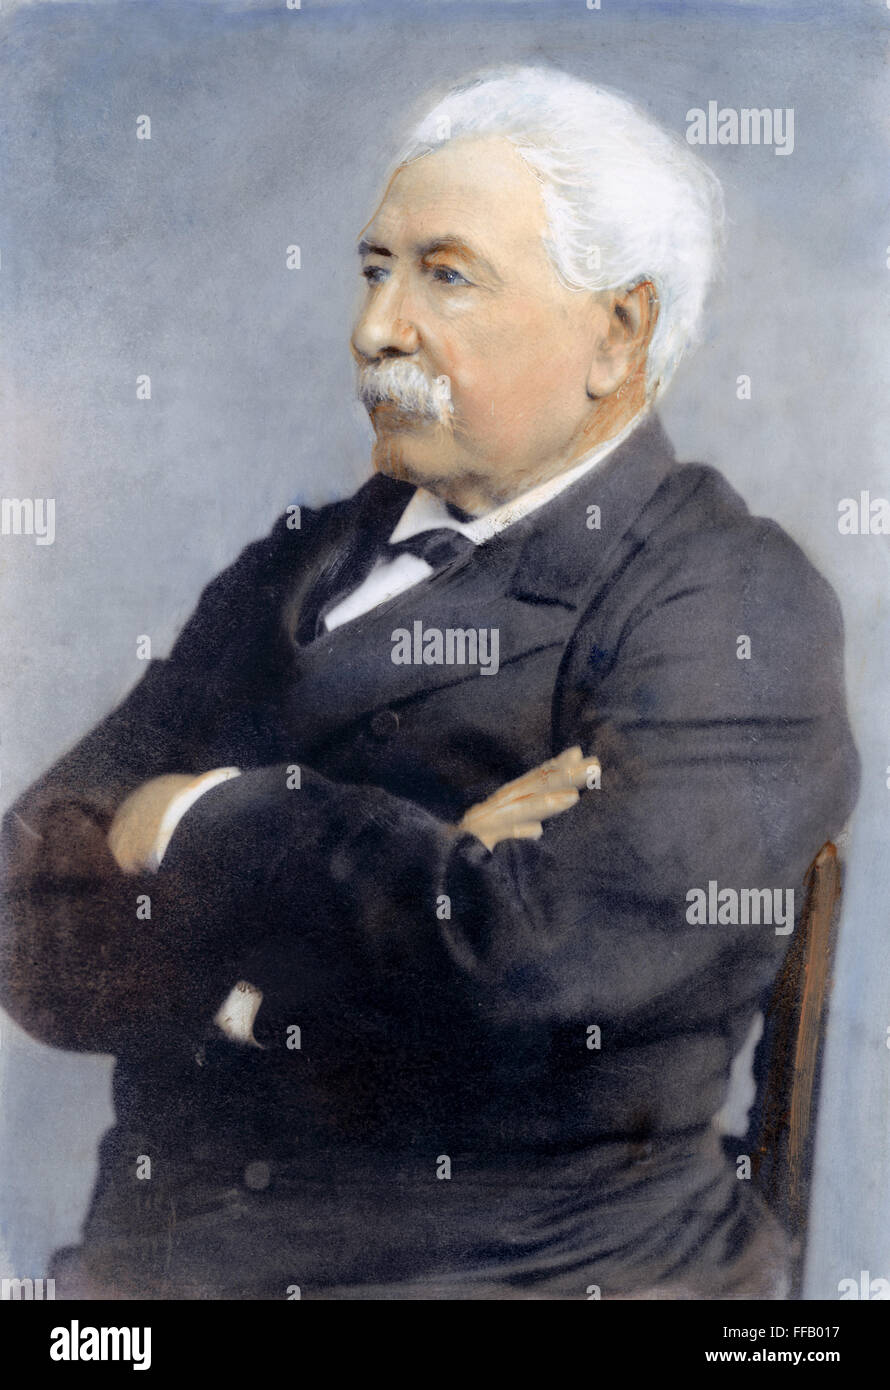 LESSEPS (1805-1894). /nVicomte Ferdinand Marie de Lesseps. Französischer Diplomat und Förderer von Suez und Panama Kanäle. Öl über Foto. Stockfoto